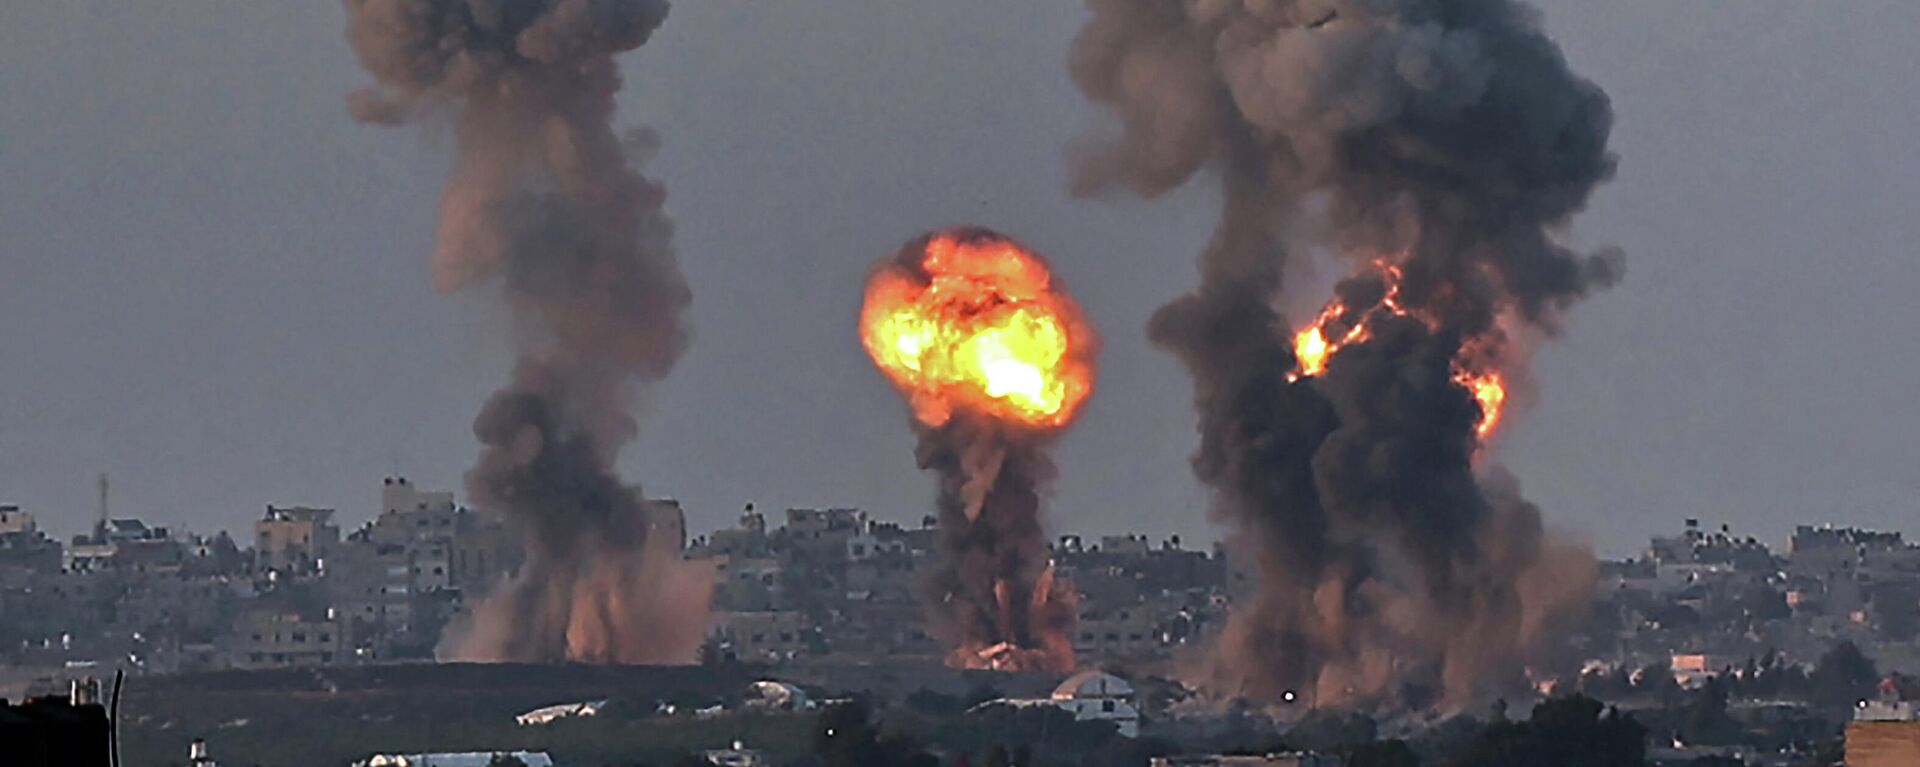 Humo y fuego en la Franja de Gaza tras un ataque de Israel - Sputnik Mundo, 1920, 12.05.2021